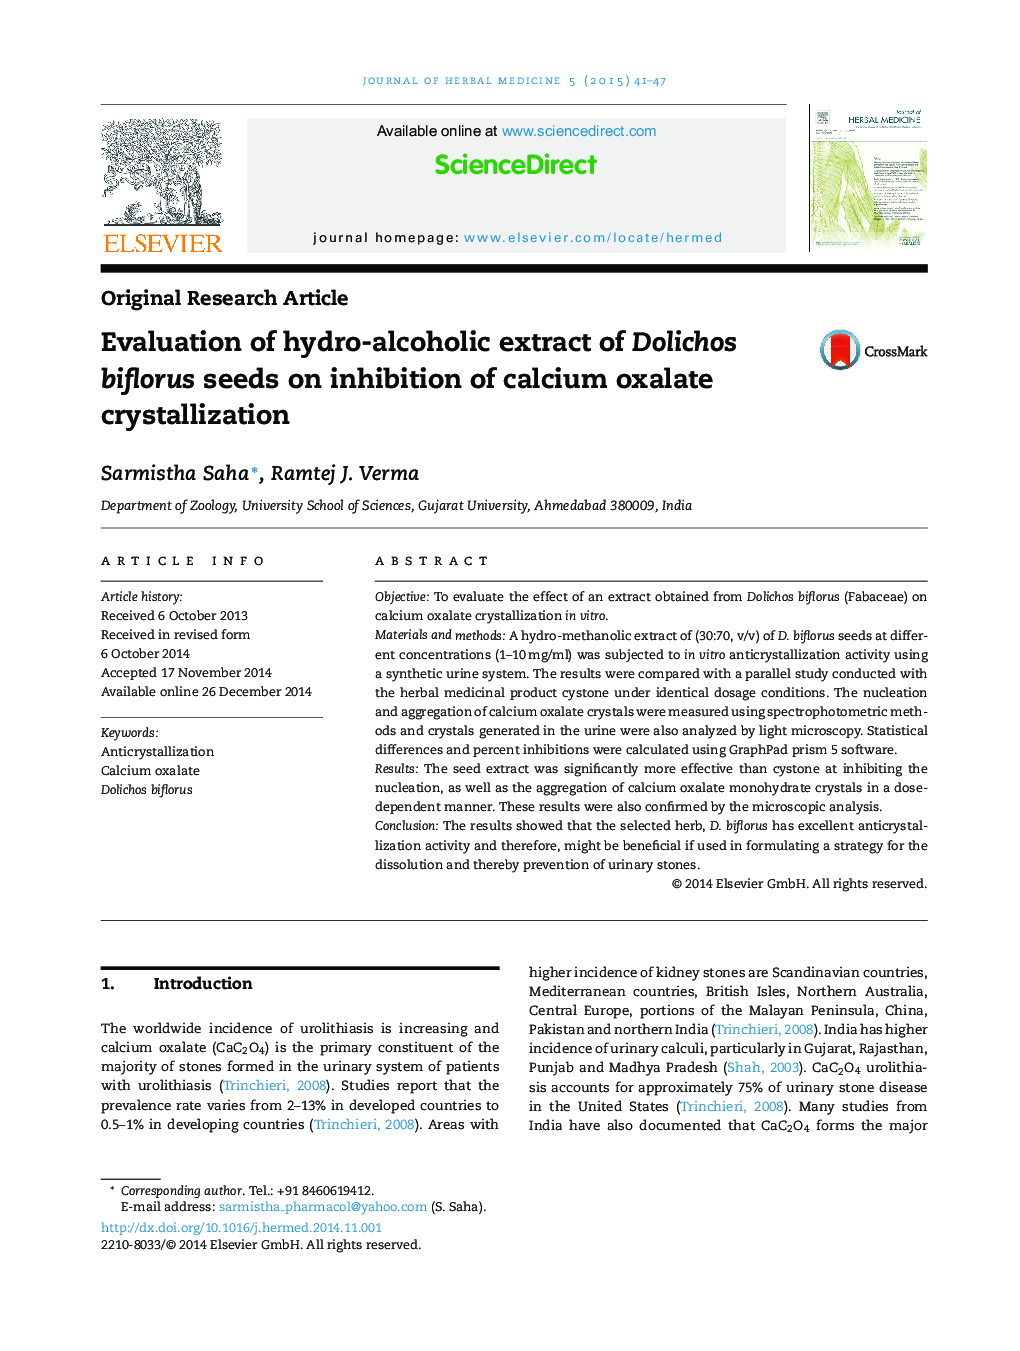 بررسی عصاره هیدروالکلی دانه های Dolichos biflorus در مهار کریستالسیون کلسیم اگزالات